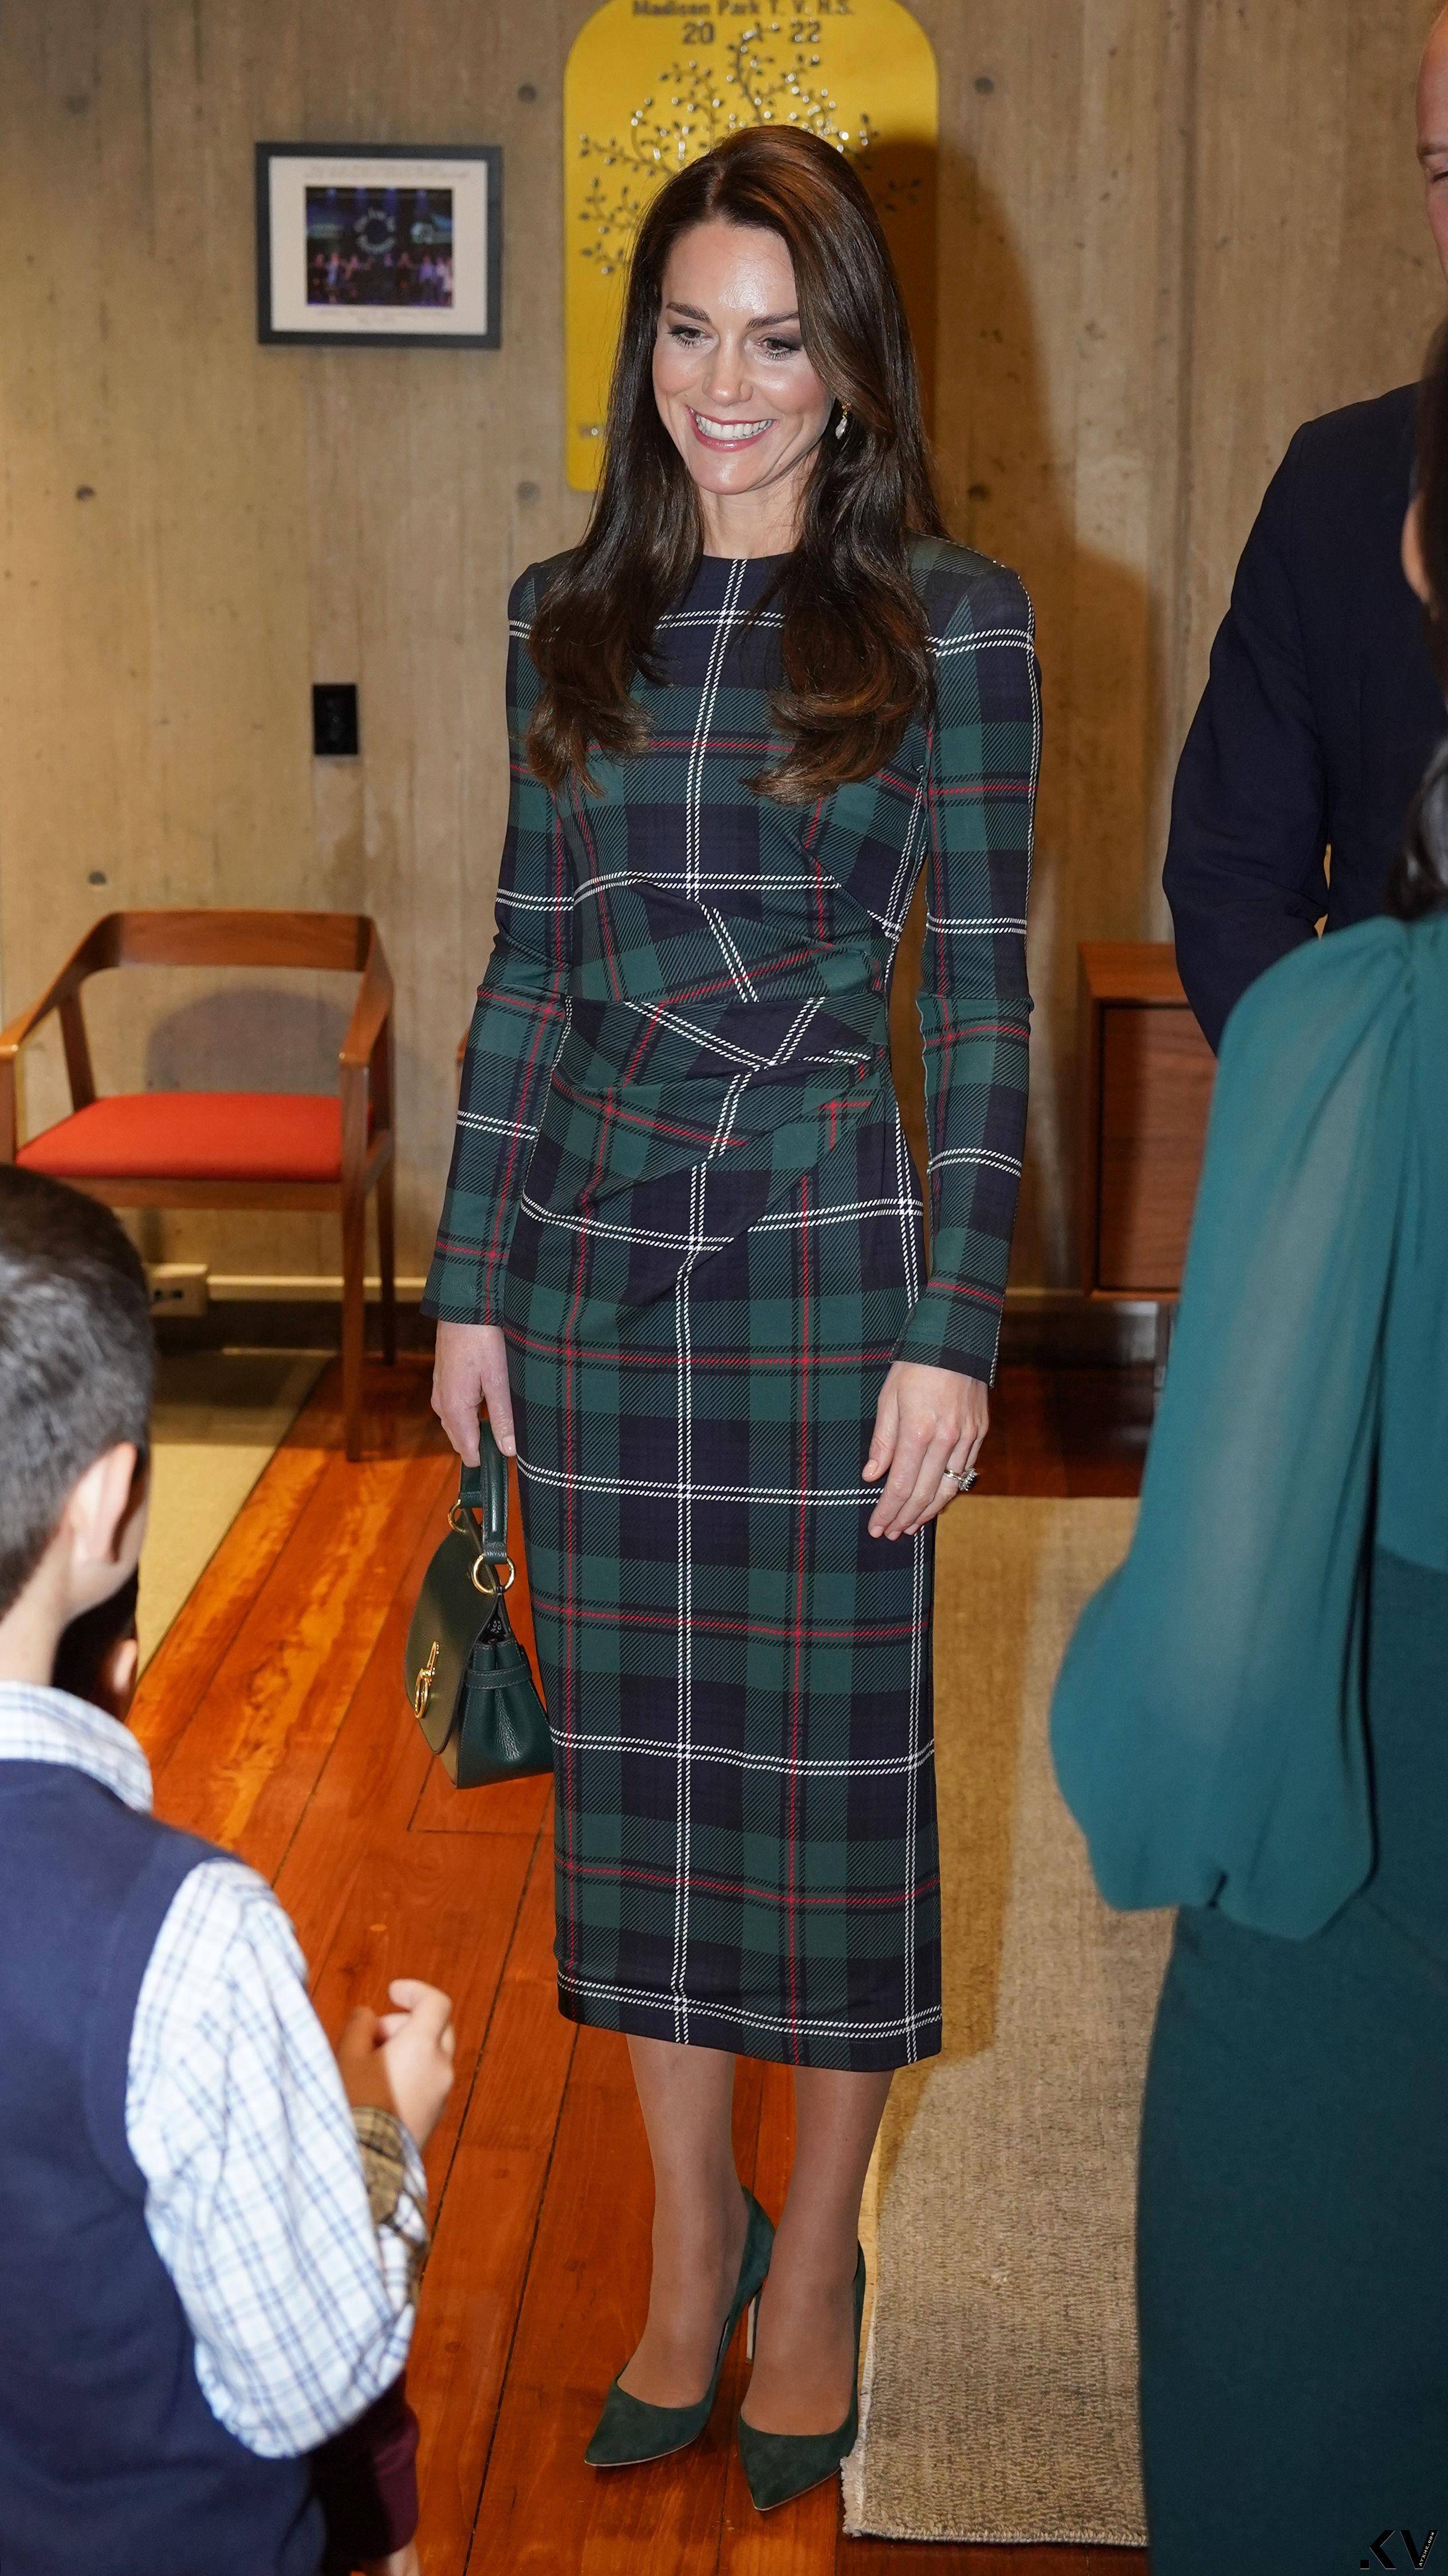 凯特王妃绿格纹裙勾纤细腰身　访美时尚外交获外媒盛赞 名人名流 图3张